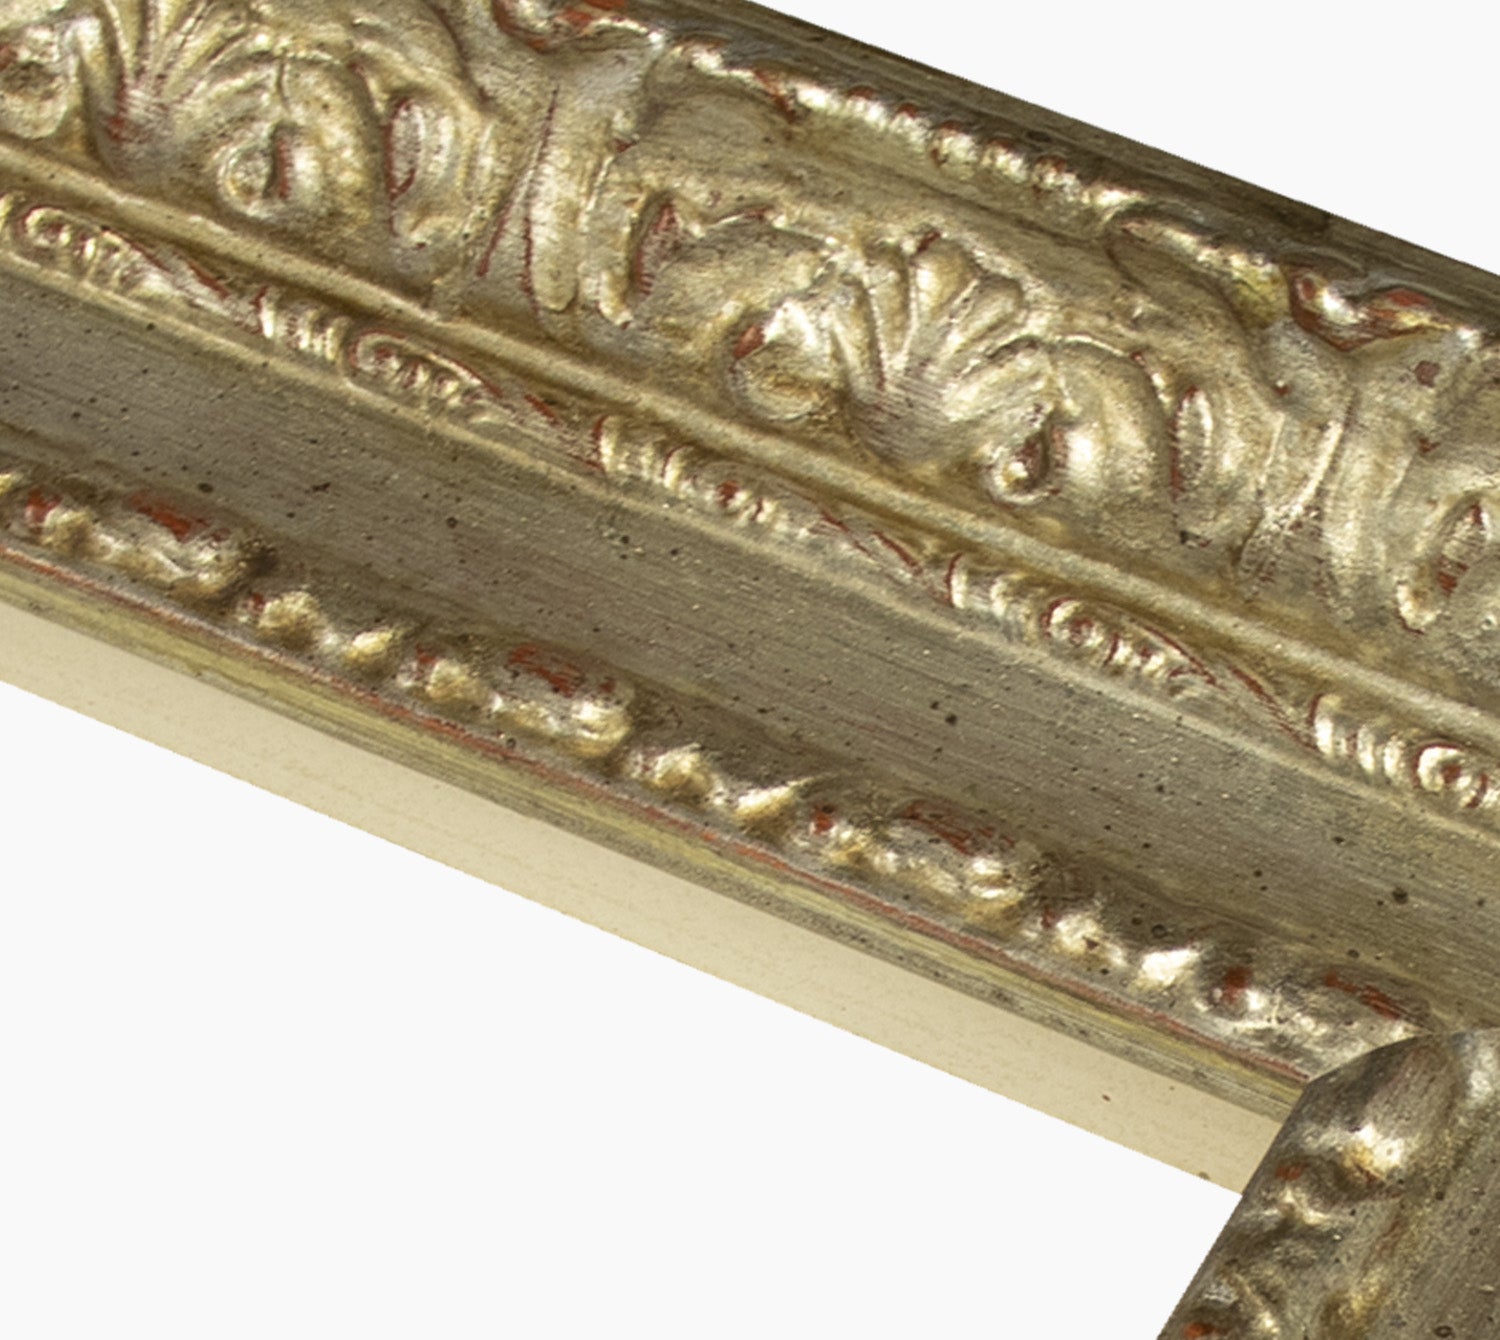 643.011 cadre en bois à la feuille d'argent mesure de profil 65x55 mm Lombarda cornici S.n.c.